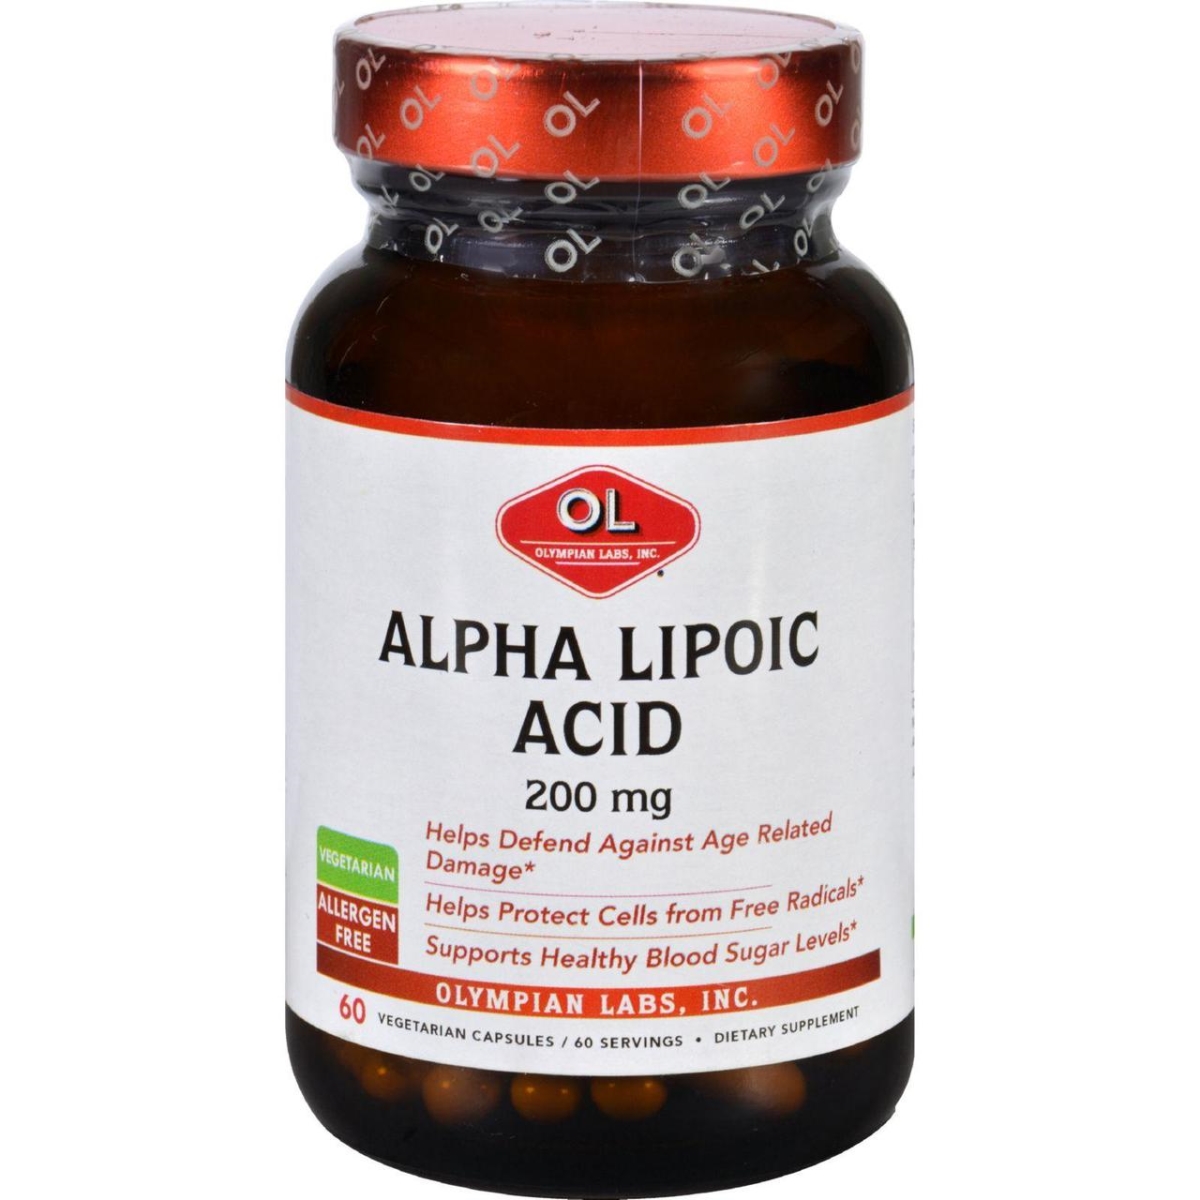 Hg1626852 200 Mg Alpha Lipoic Acid - 60 Vegetarian Capsules